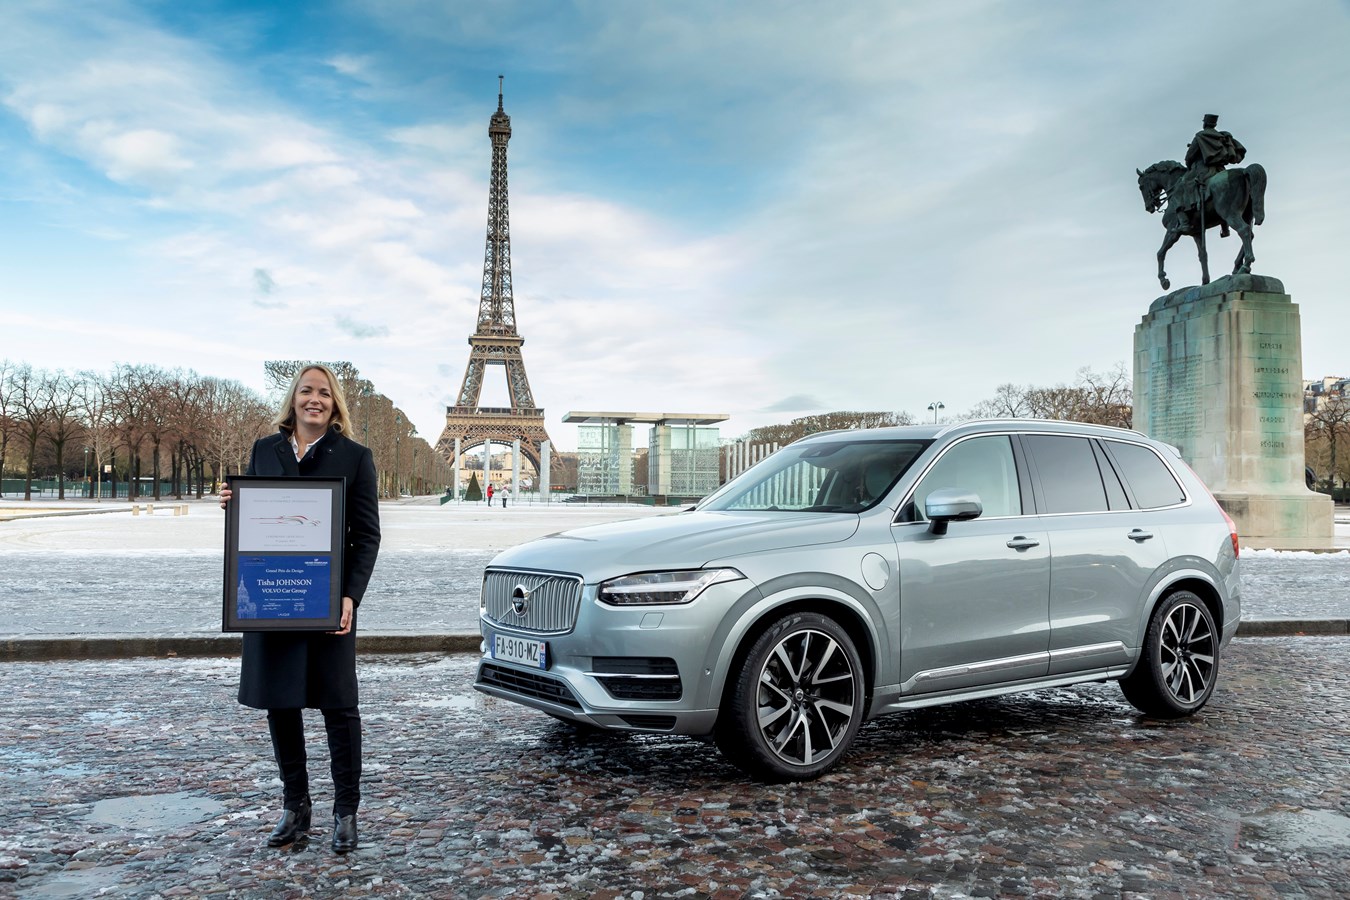 Tisha Johnson reçoit le Grand Prix du Design lors du Festival Automobile International pour son travail à la tête du département Design Intérieur de Volvo Car Group